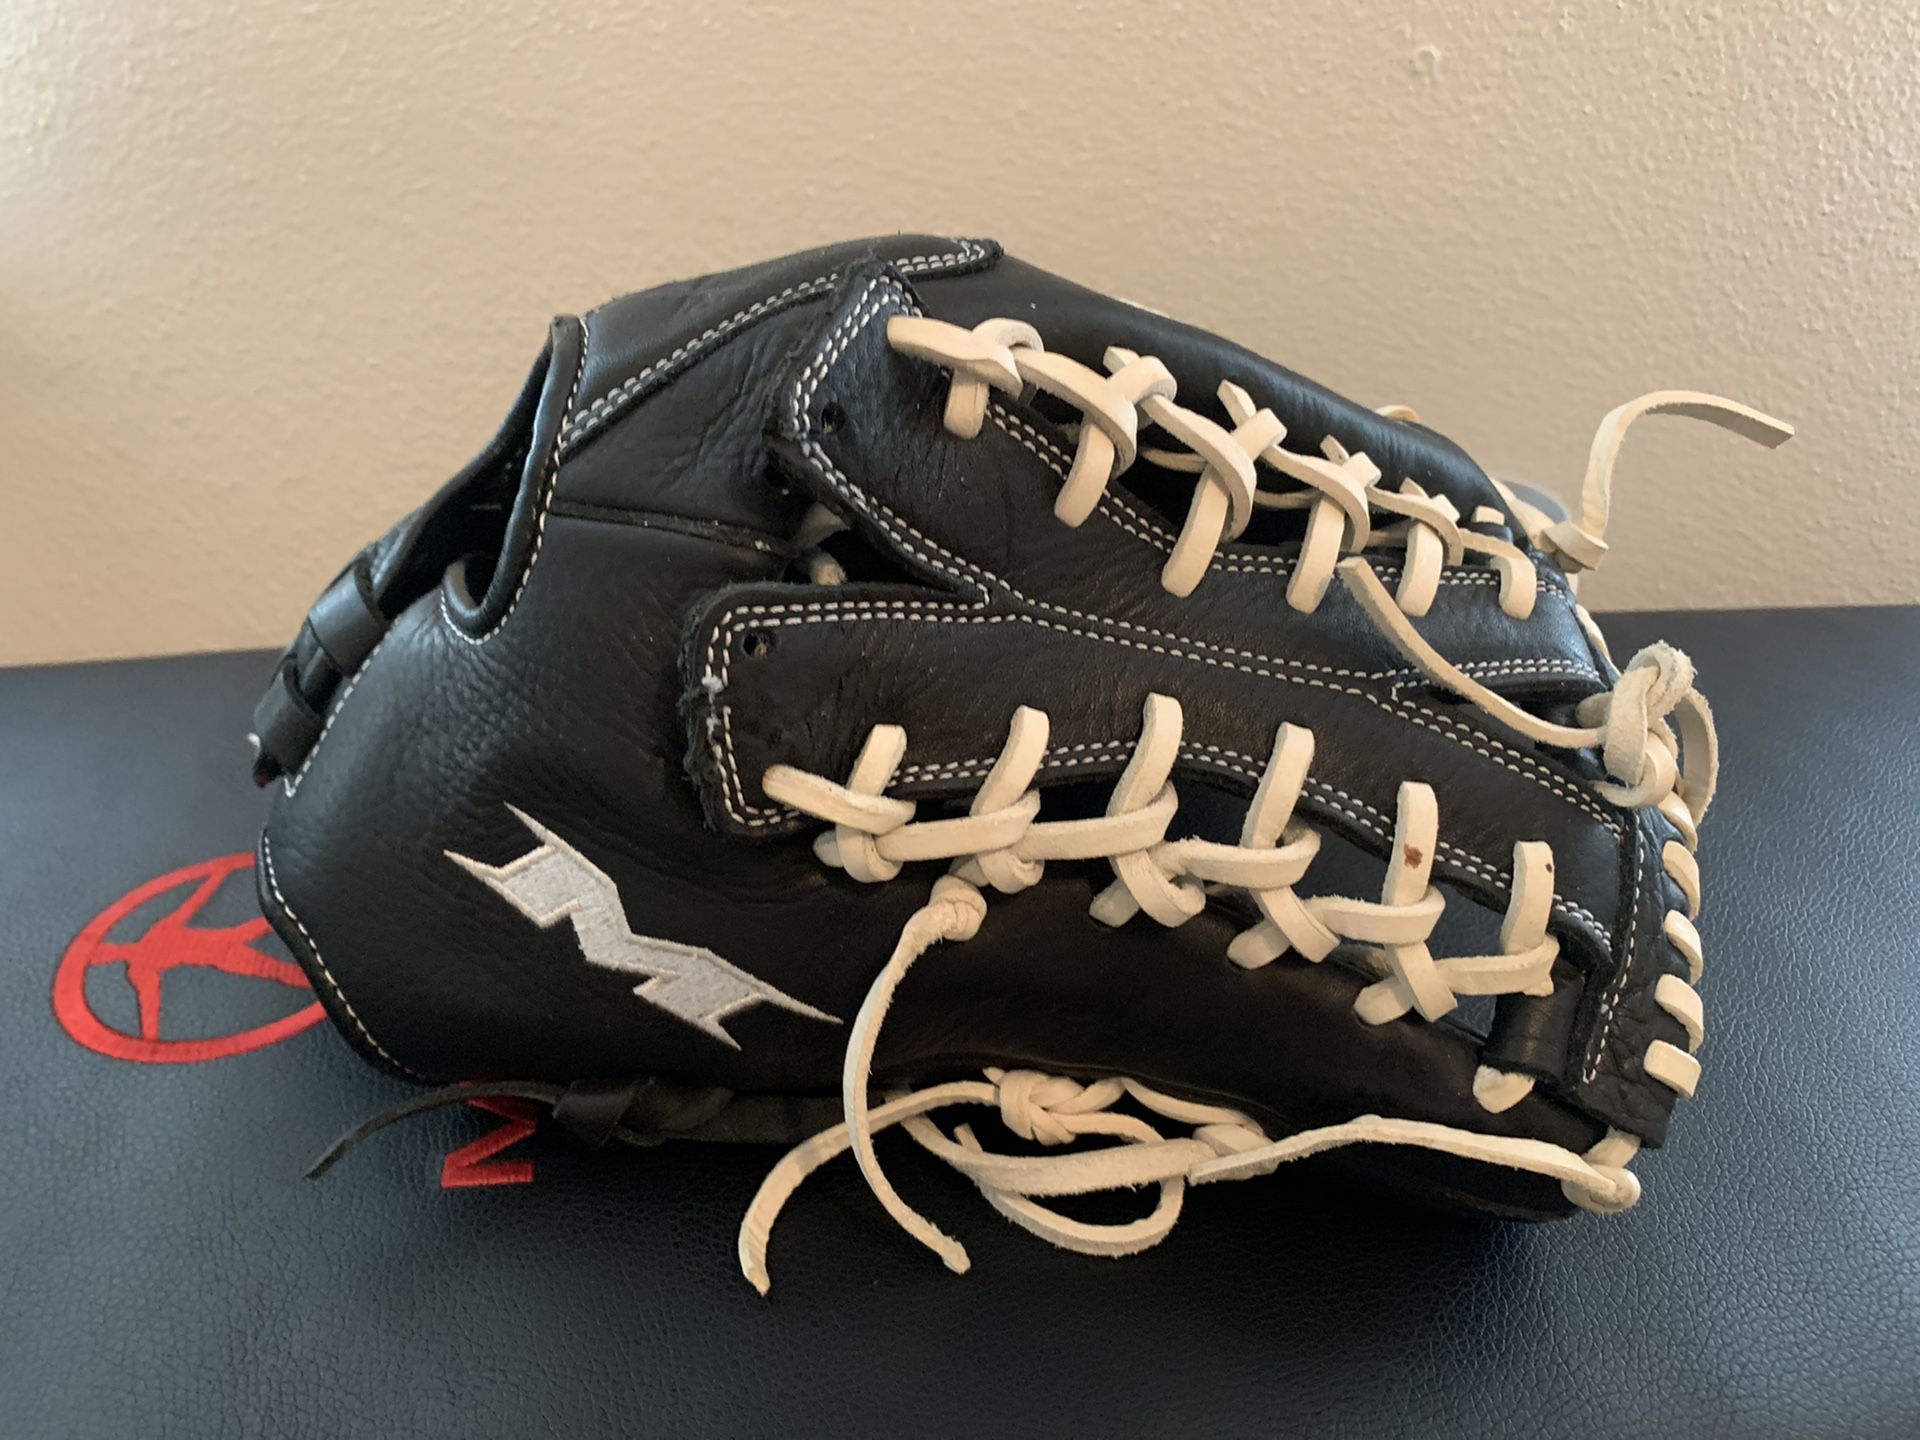 Miken Softball Glove